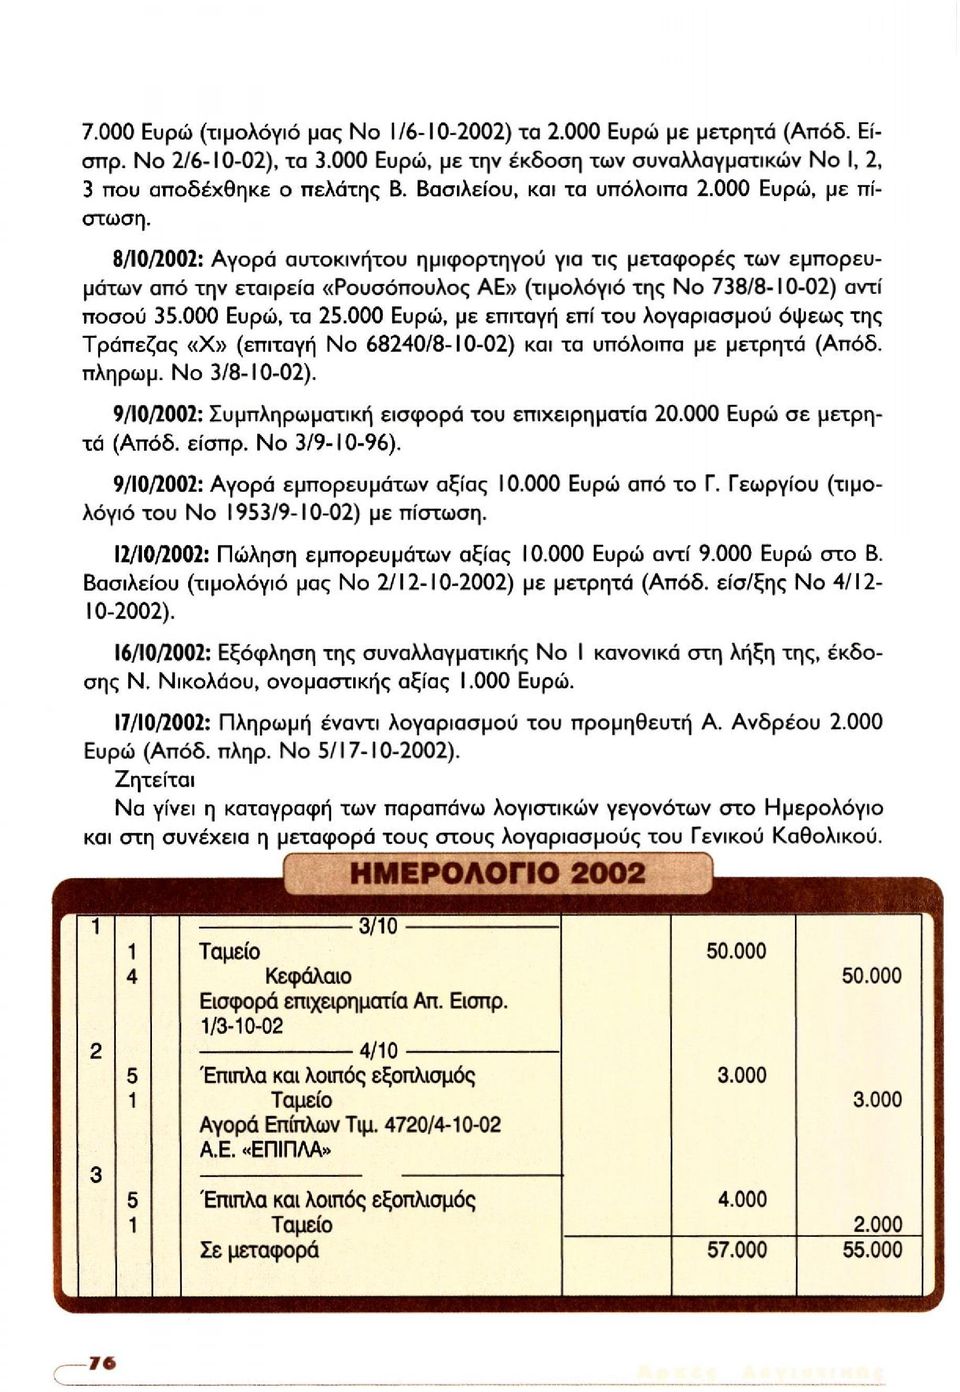 8/10/2002: Αγορά αυτοκινήτου ημιφορτηγού για τις μεταφορές των εμπορευμάτων από την εταιρεία «Ρουσόπουλος ΑΕ» (τιμολόγιο της No 738/8-10-02) αντί ποσού 35.000 Ευρώ, τα 25.